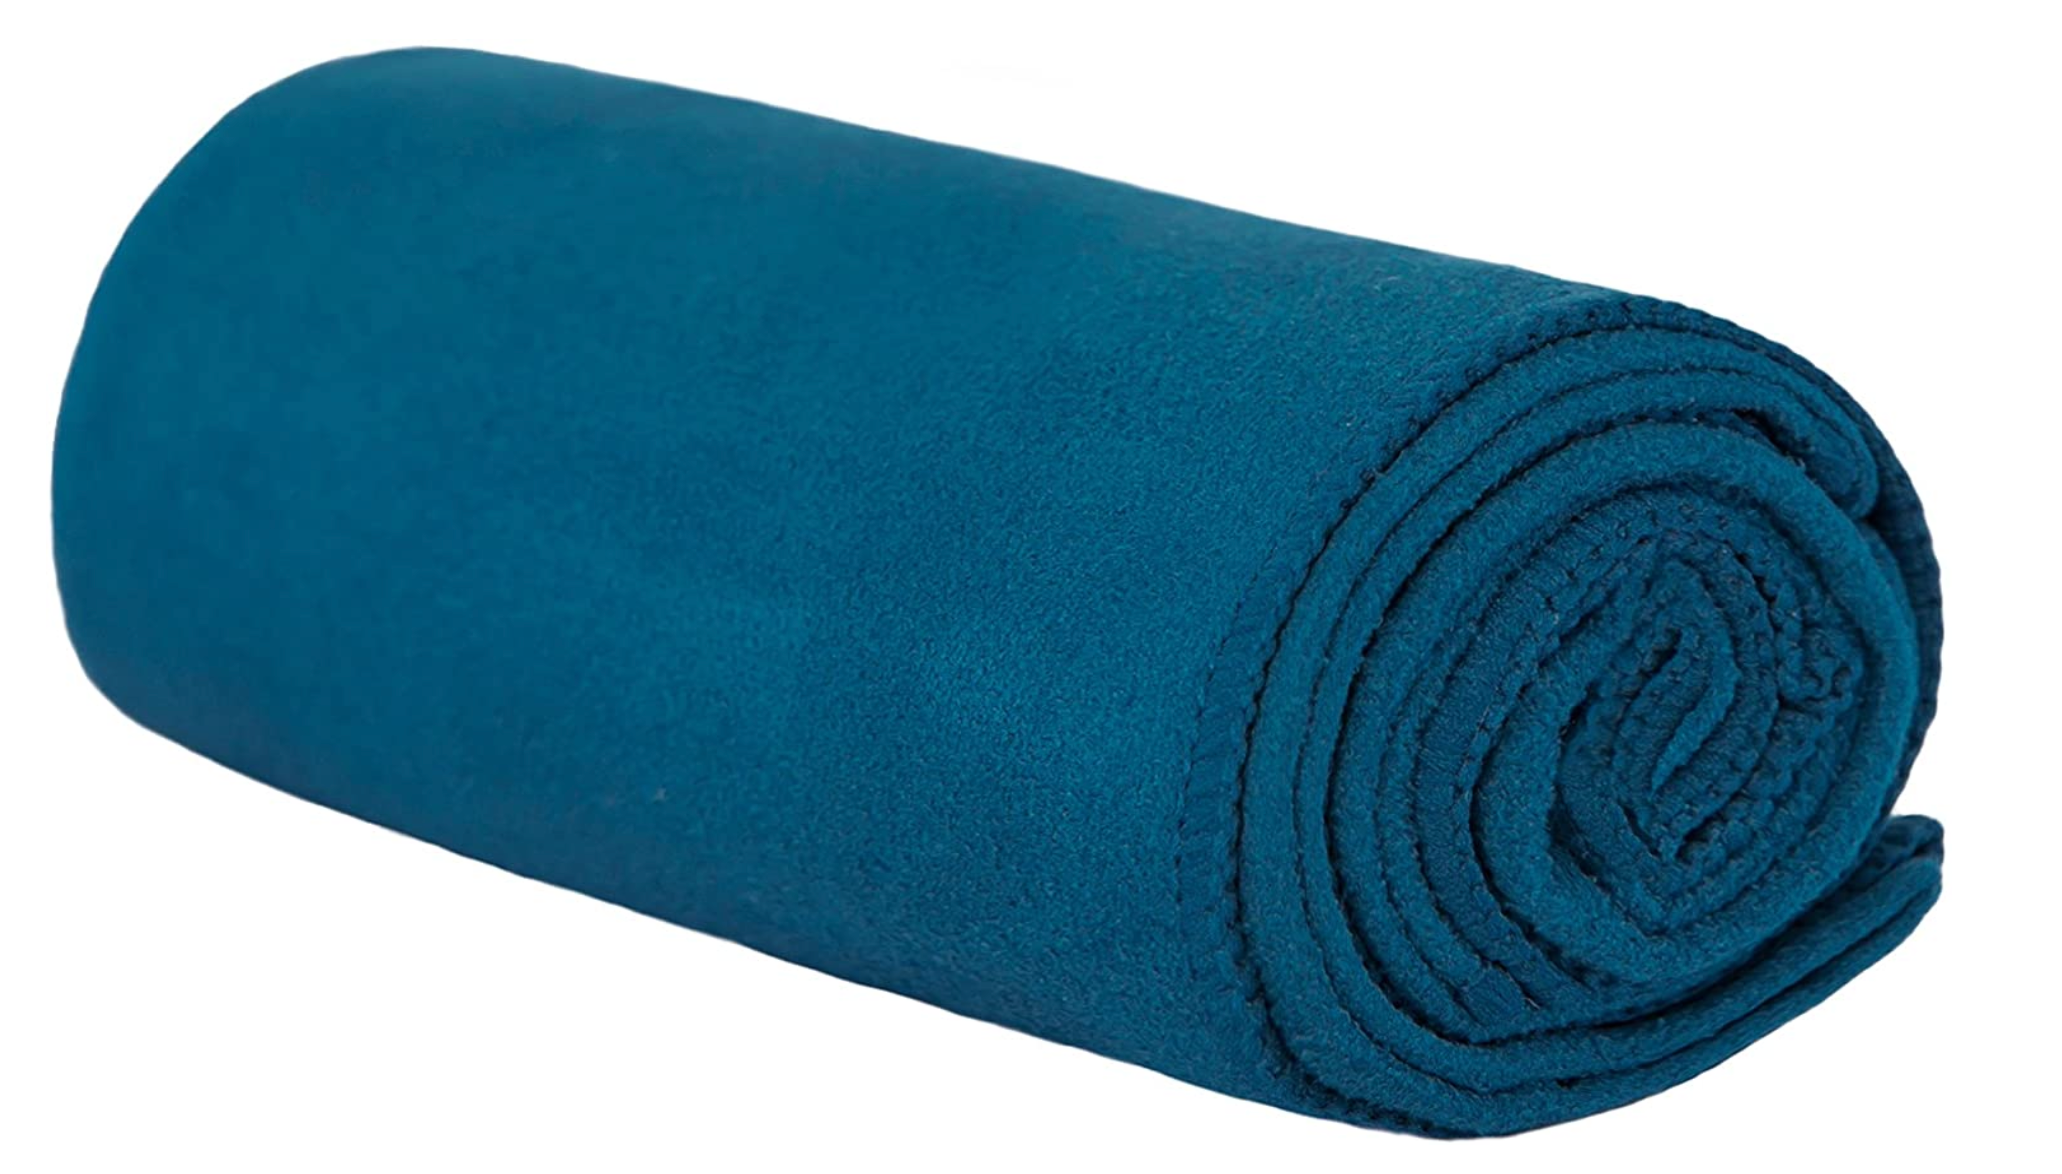 Microfiber Yoga Mat Towel